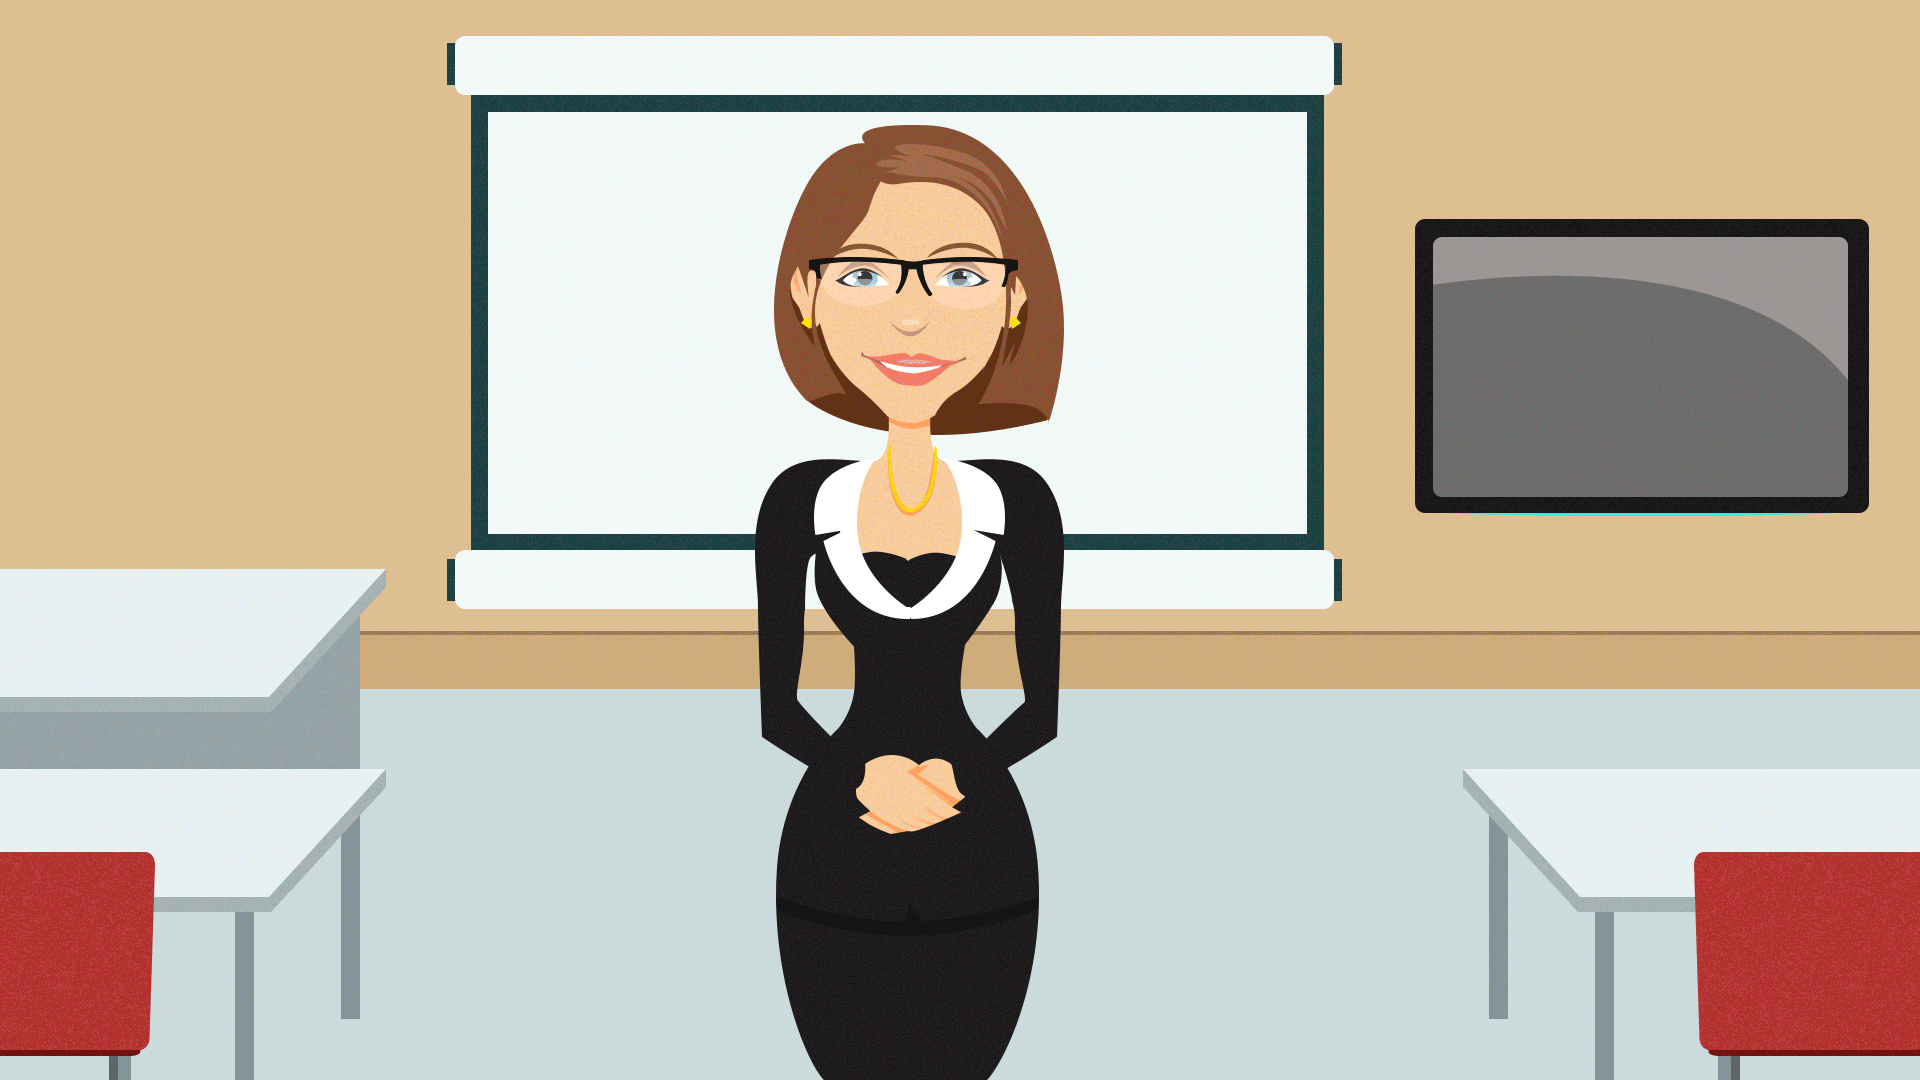 Teachers series гифки, анимированные GIF изображения teachers series